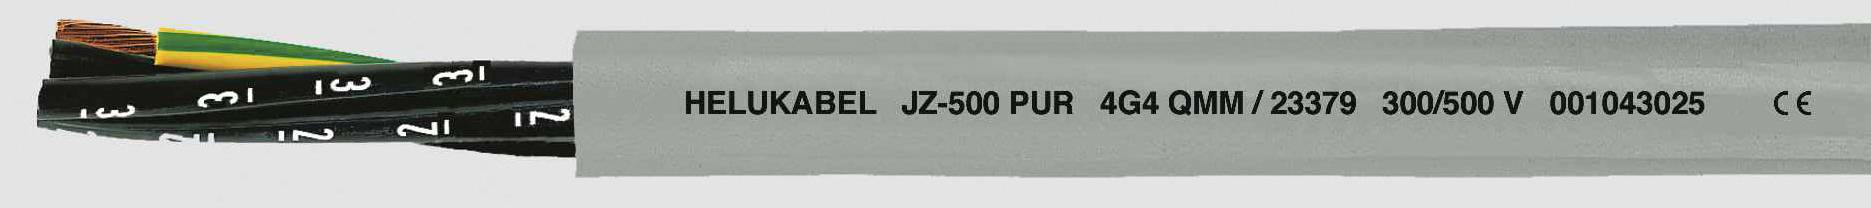 HELUKABEL JZ-500 PUR Steuerleitung 3 G 1.50 mm² Grau 23361 100 m